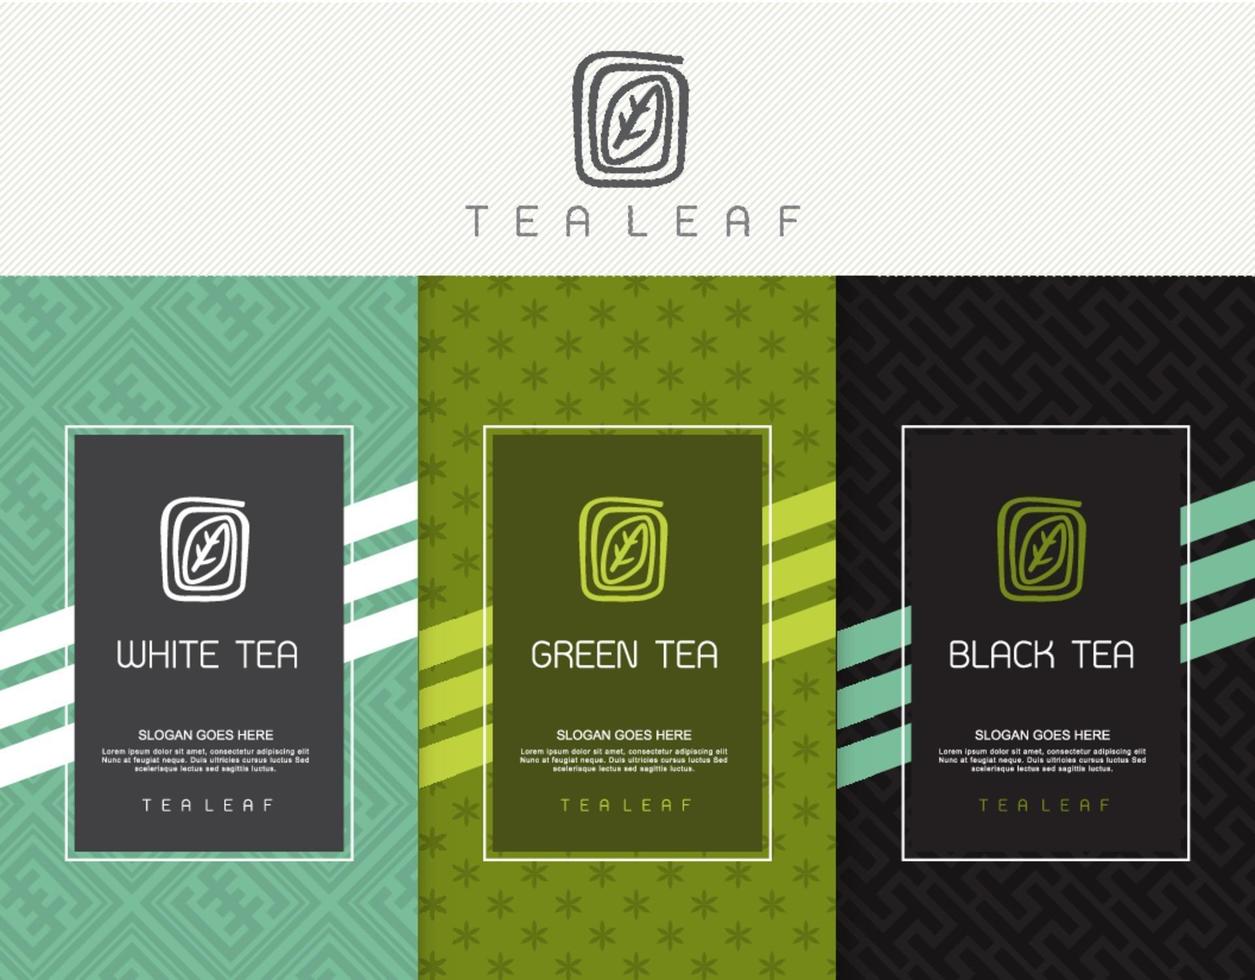 vector set sjablonen verpakking thee, logo, etiket, spandoek, poster, identiteit, huisstijl. stijlvol ontwerp voor zwarte thee - groene thee - witte thee - oolongthee